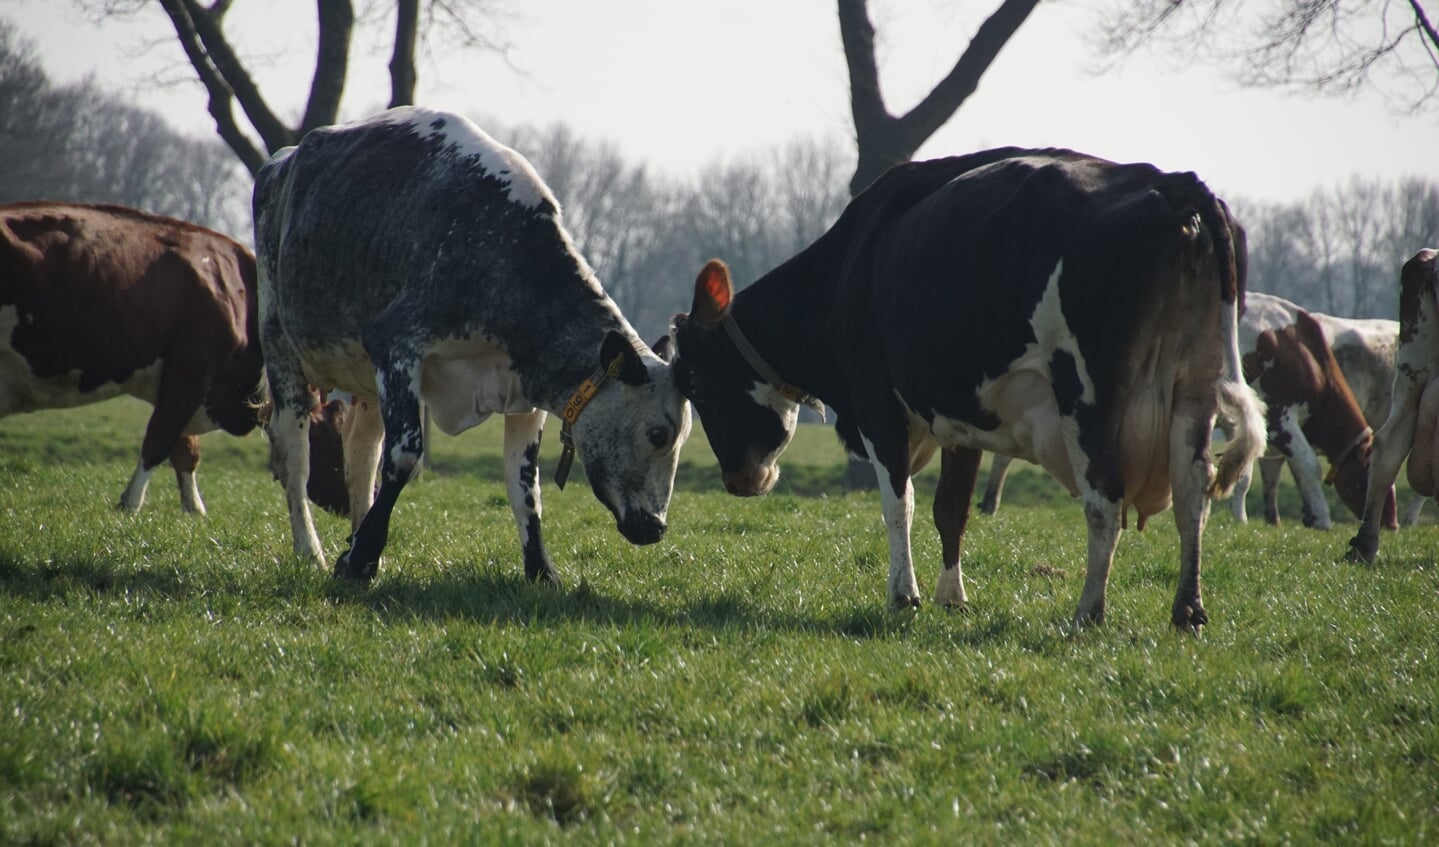 Koeien geven elkaar kopstootjes. Foto: Frank Vinkenvleugel